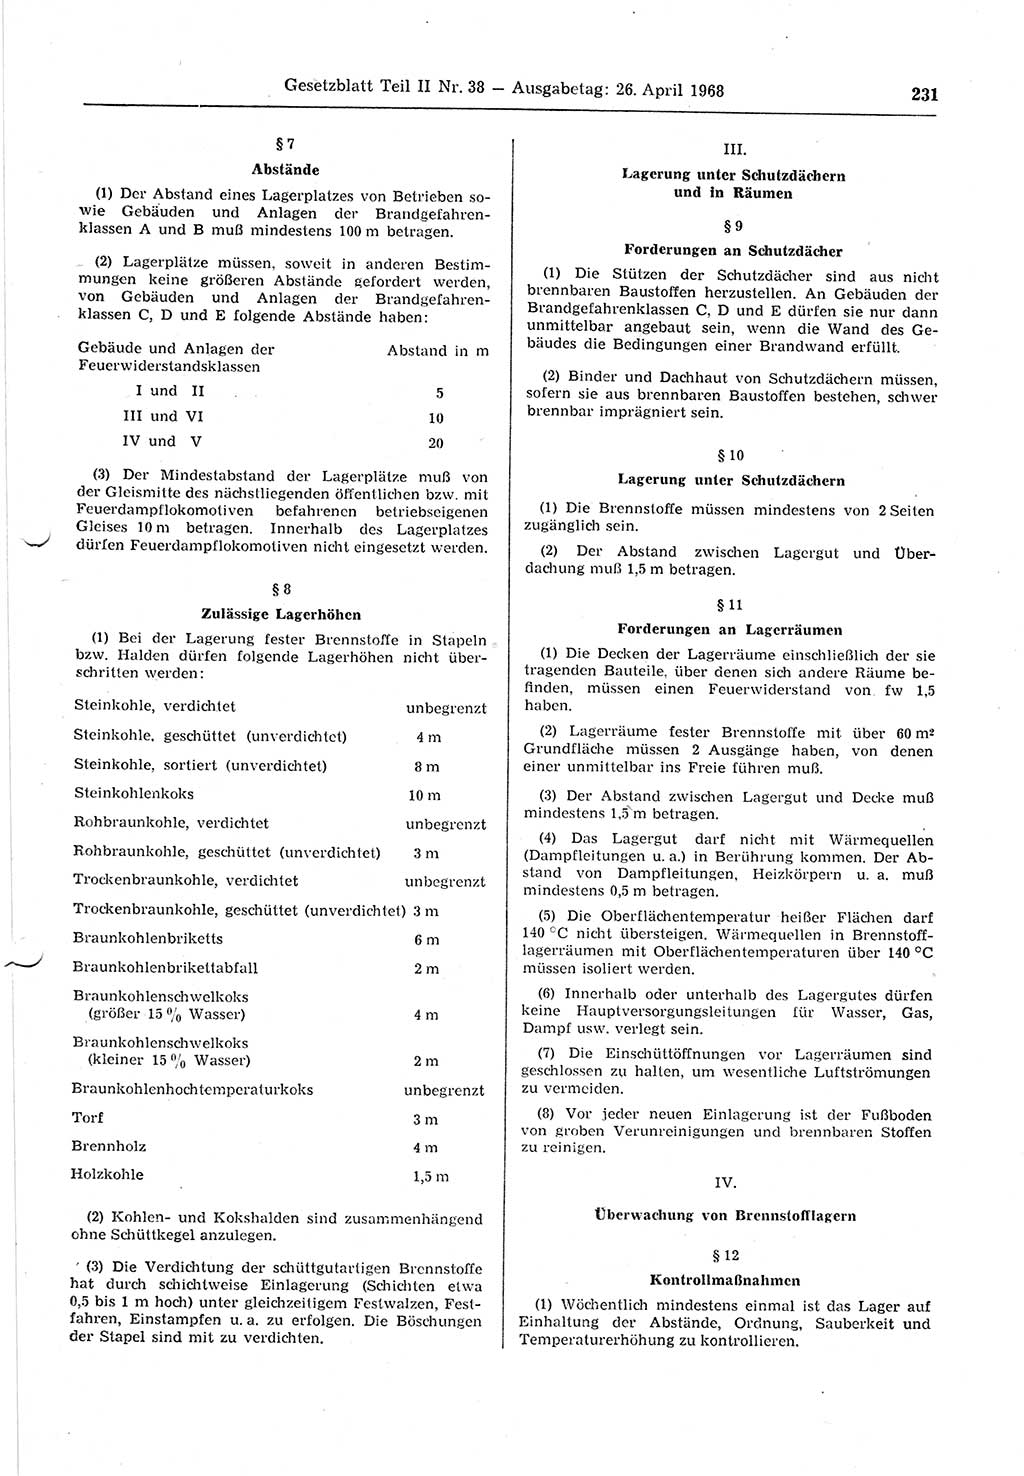 Gesetzblatt (GBl.) der Deutschen Demokratischen Republik (DDR) Teil ⅠⅠ 1968, Seite 231 (GBl. DDR ⅠⅠ 1968, S. 231)